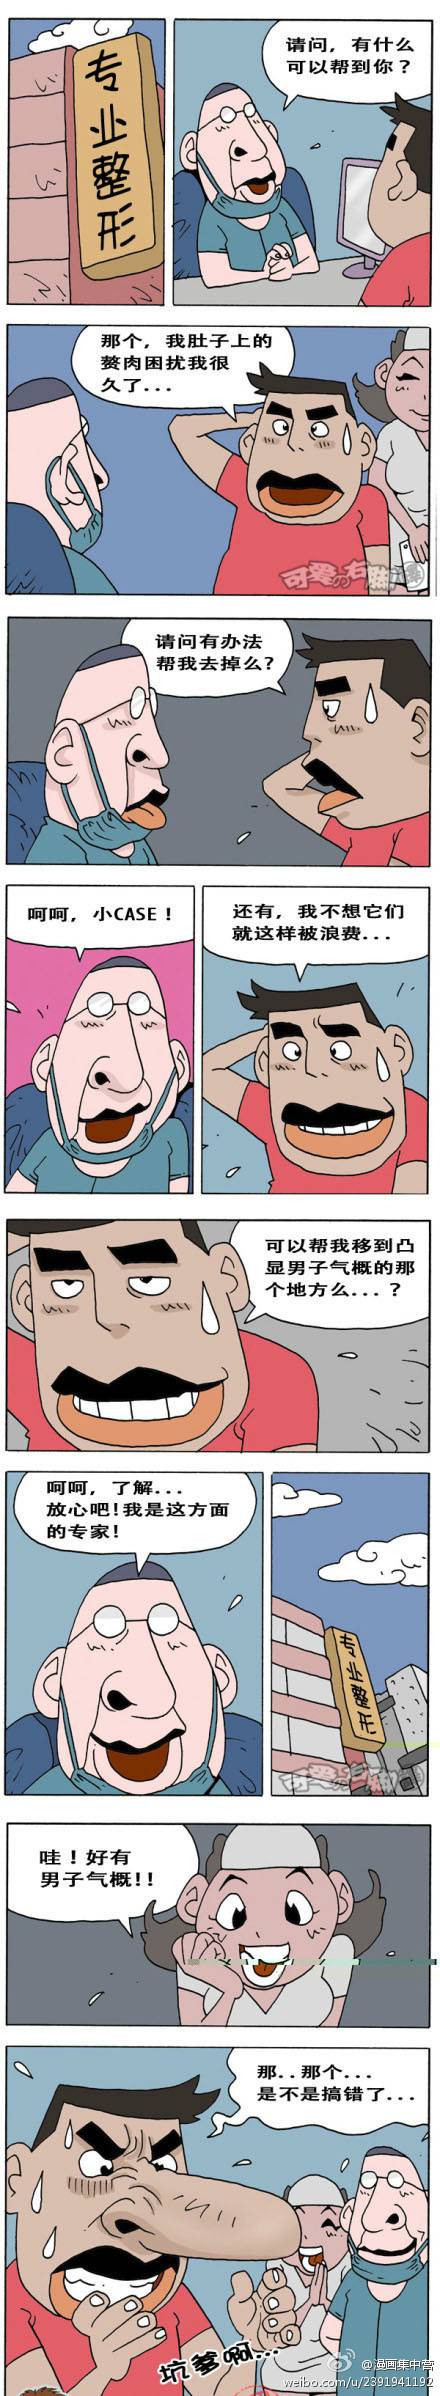 邪恶漫画爆笑囧图第86刊：很内涵